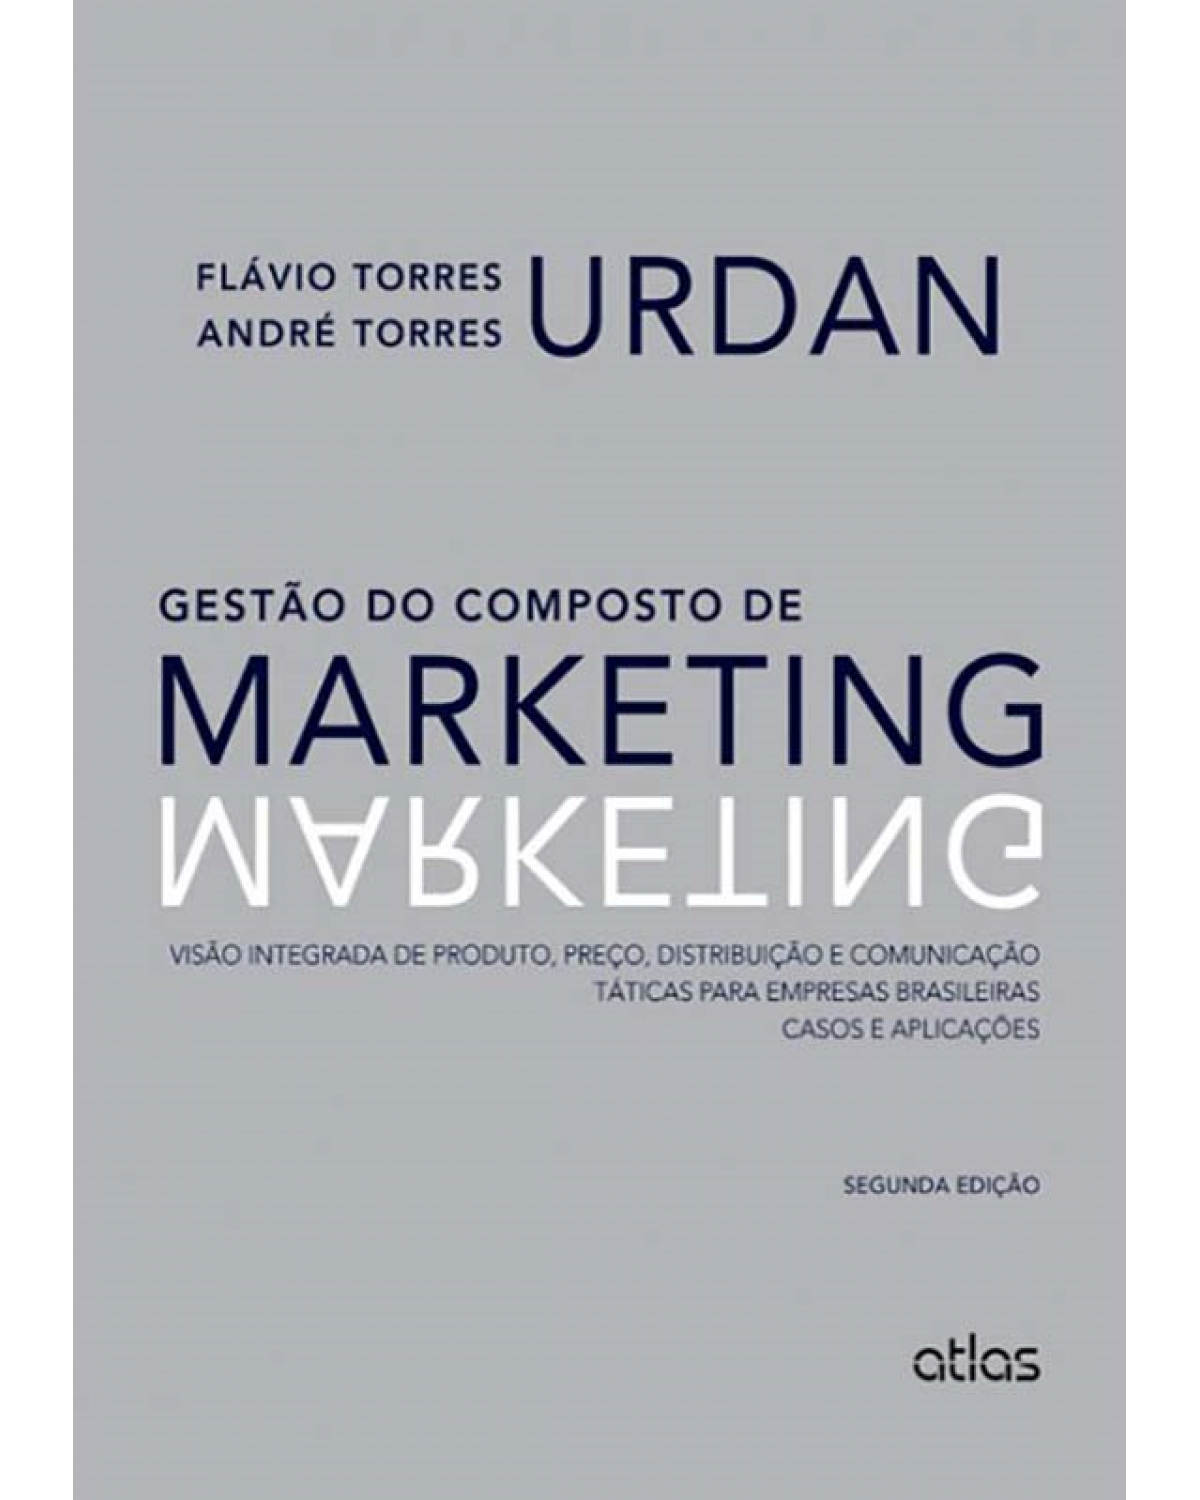 Gestão do composto de marketing - Visão integrada de produto, preço, distribuição e comunicação - Táticas para empresas brasileiras - Casos e aplicações - 2ª Edição | 2013